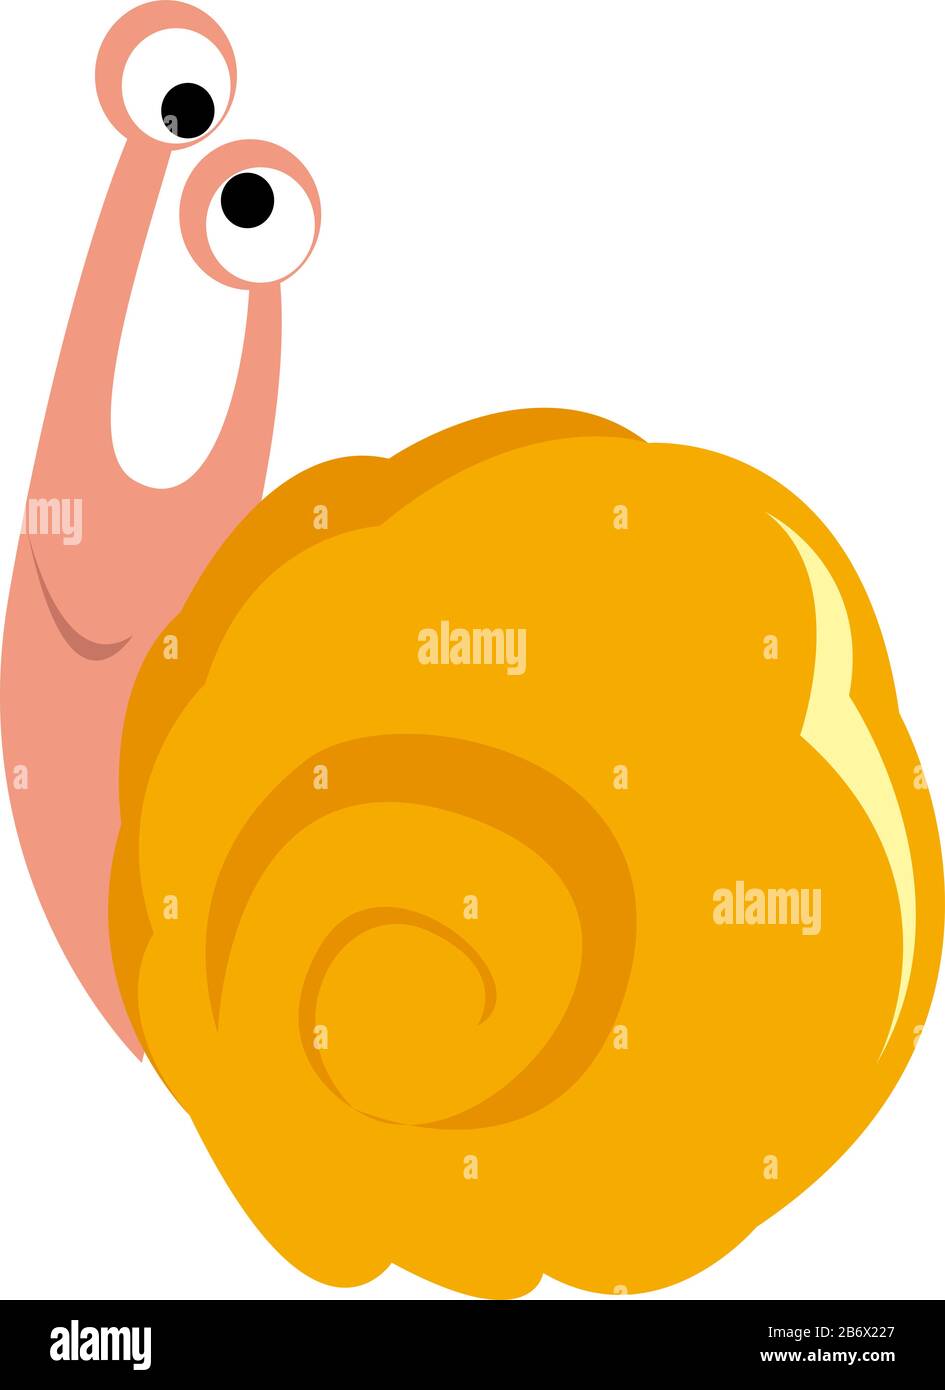 Cross eyed snail, illustration, vector on white background. Stock Vector